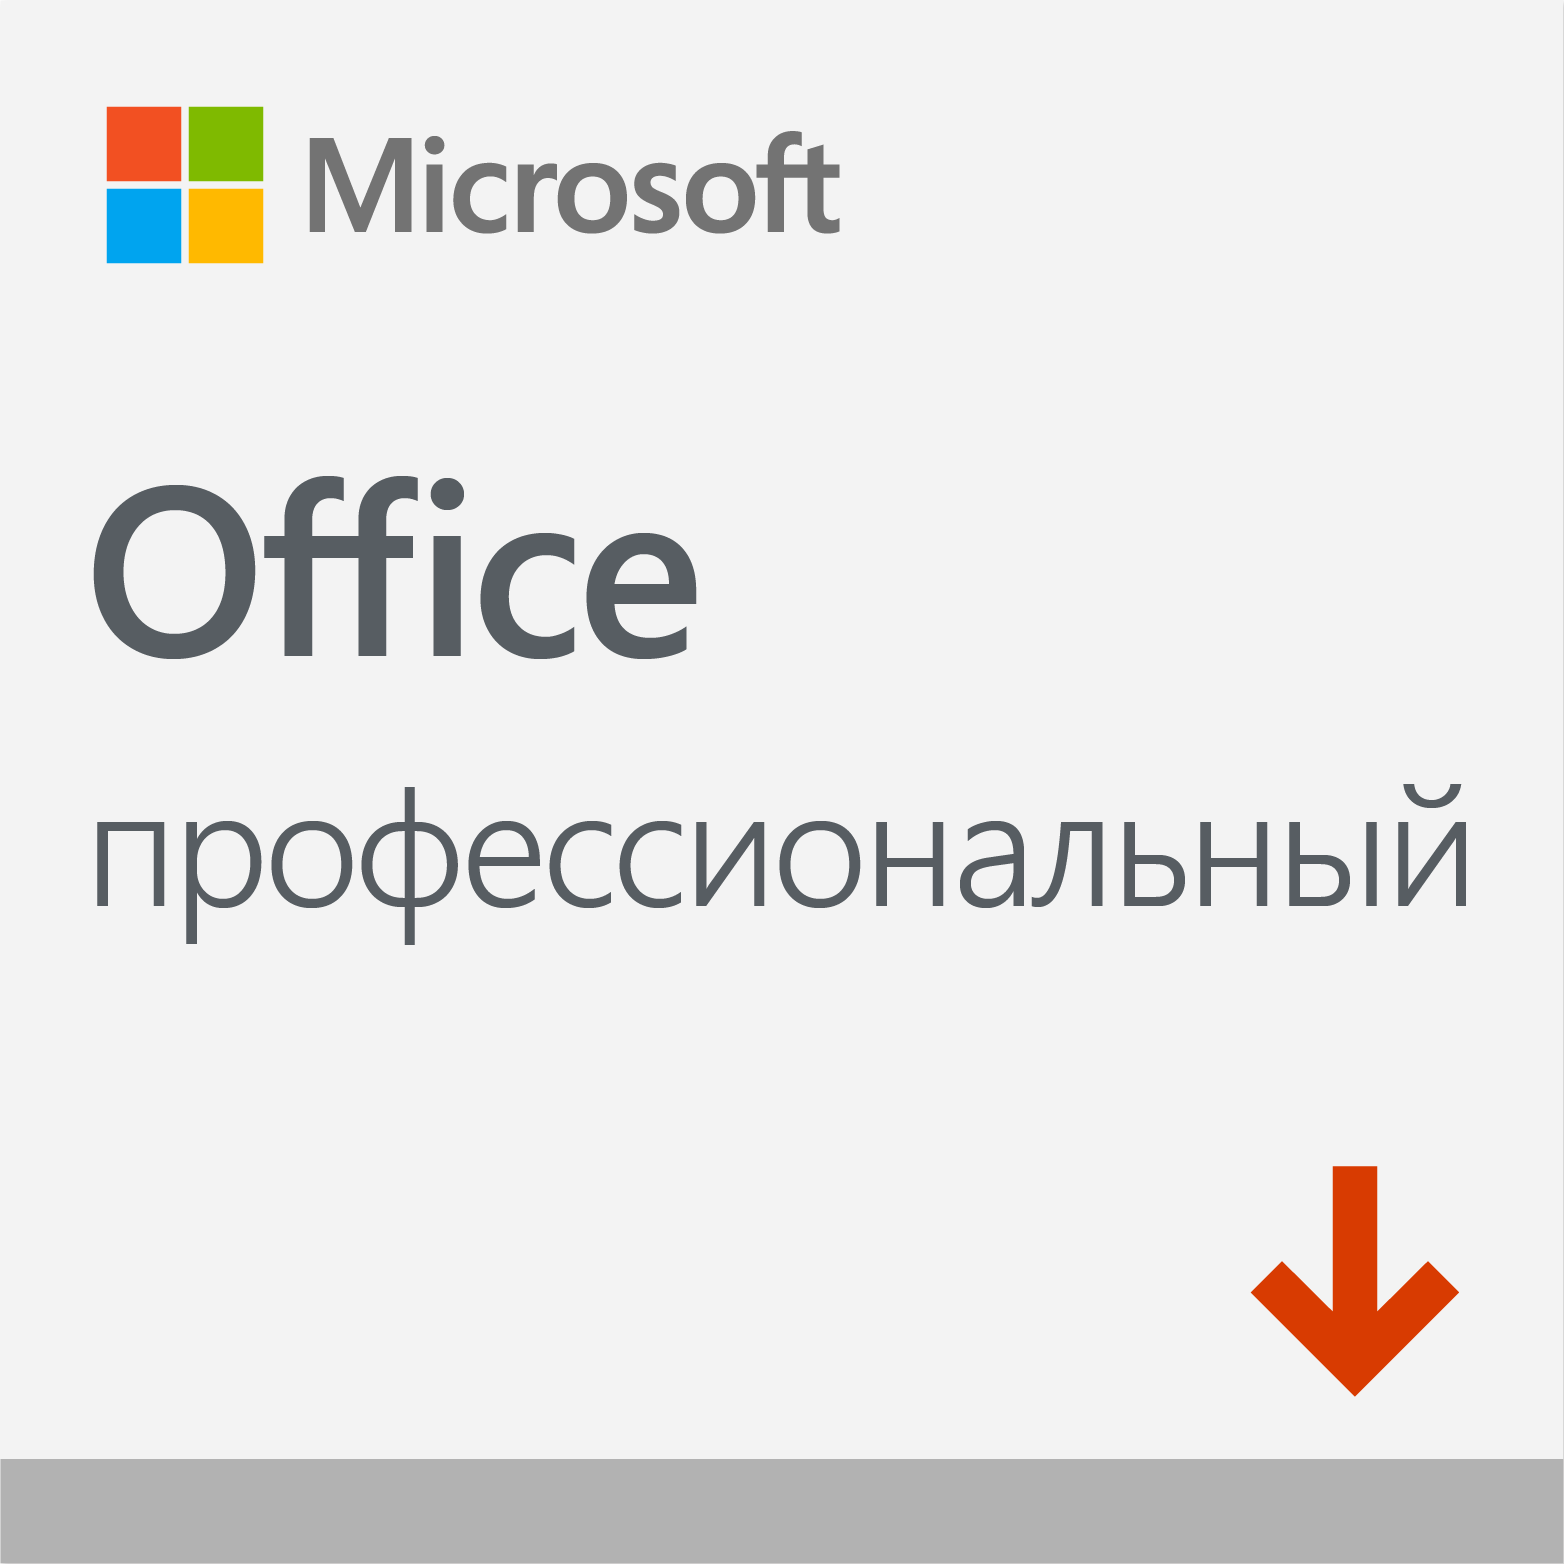 Microsoft Office Профессиональный 2019 (ESD) (1ПК бессрочно) All Languages Электронный ключ (Высылается на почту после оплаты!) (269-17064) - фото 1